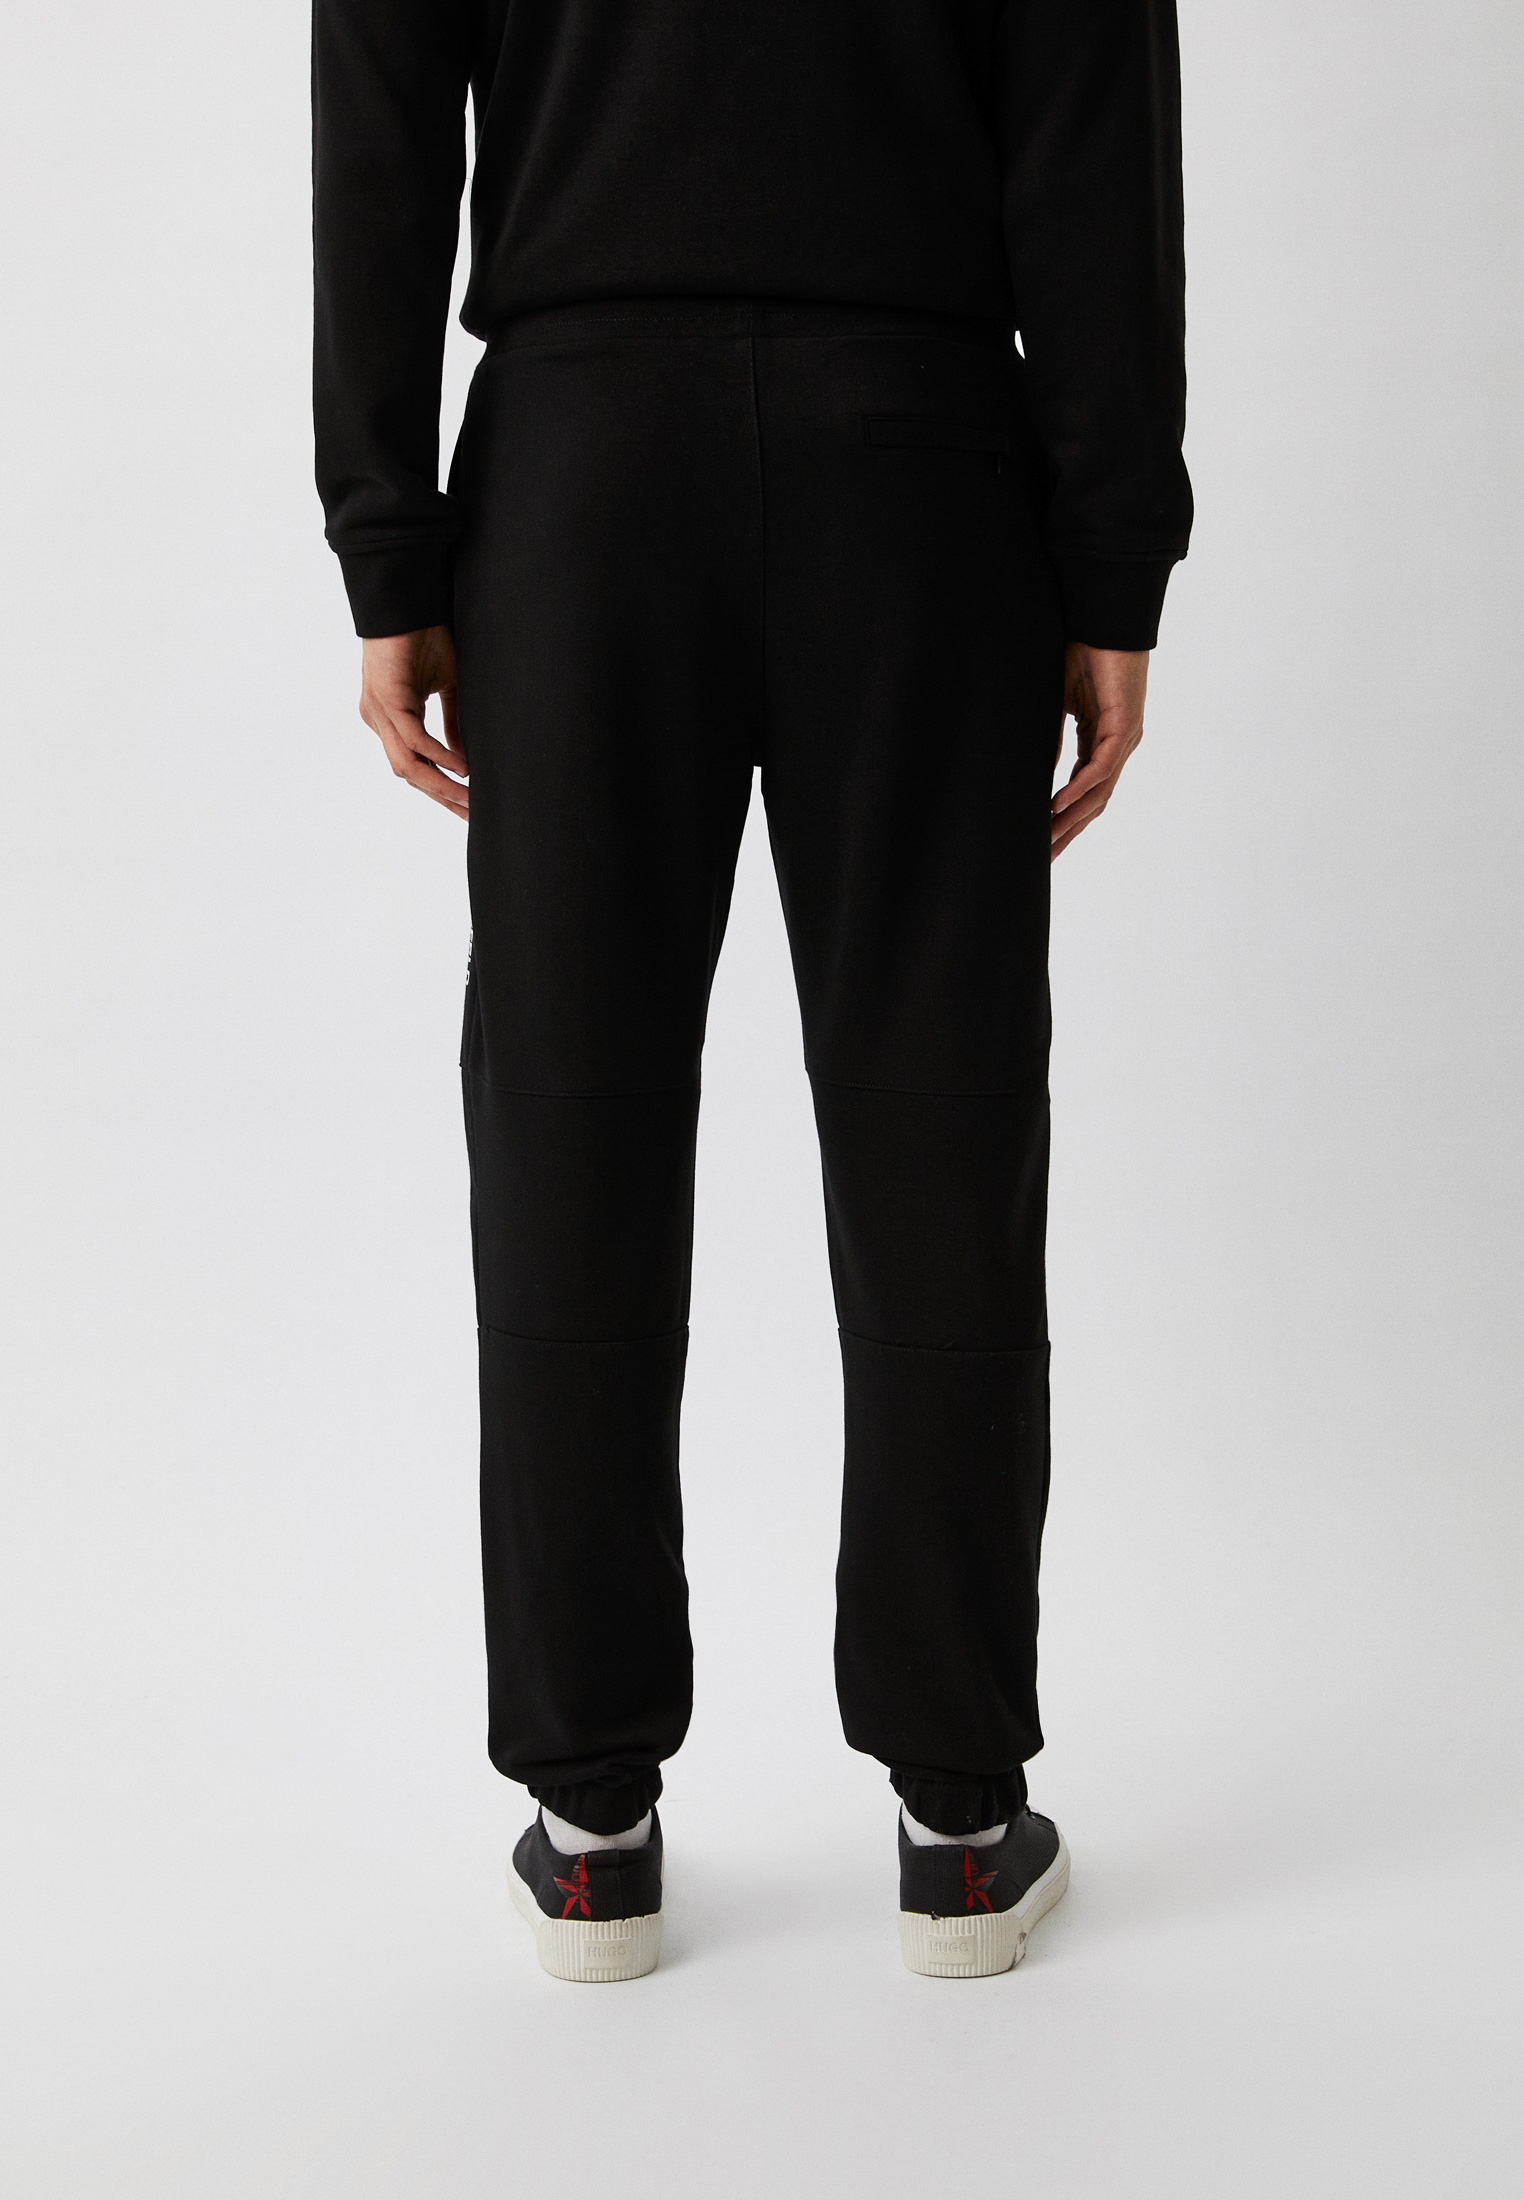 Мужские спортивные брюки Karl Lagerfeld (Карл Лагерфельд) 705063-533910: изображение 3